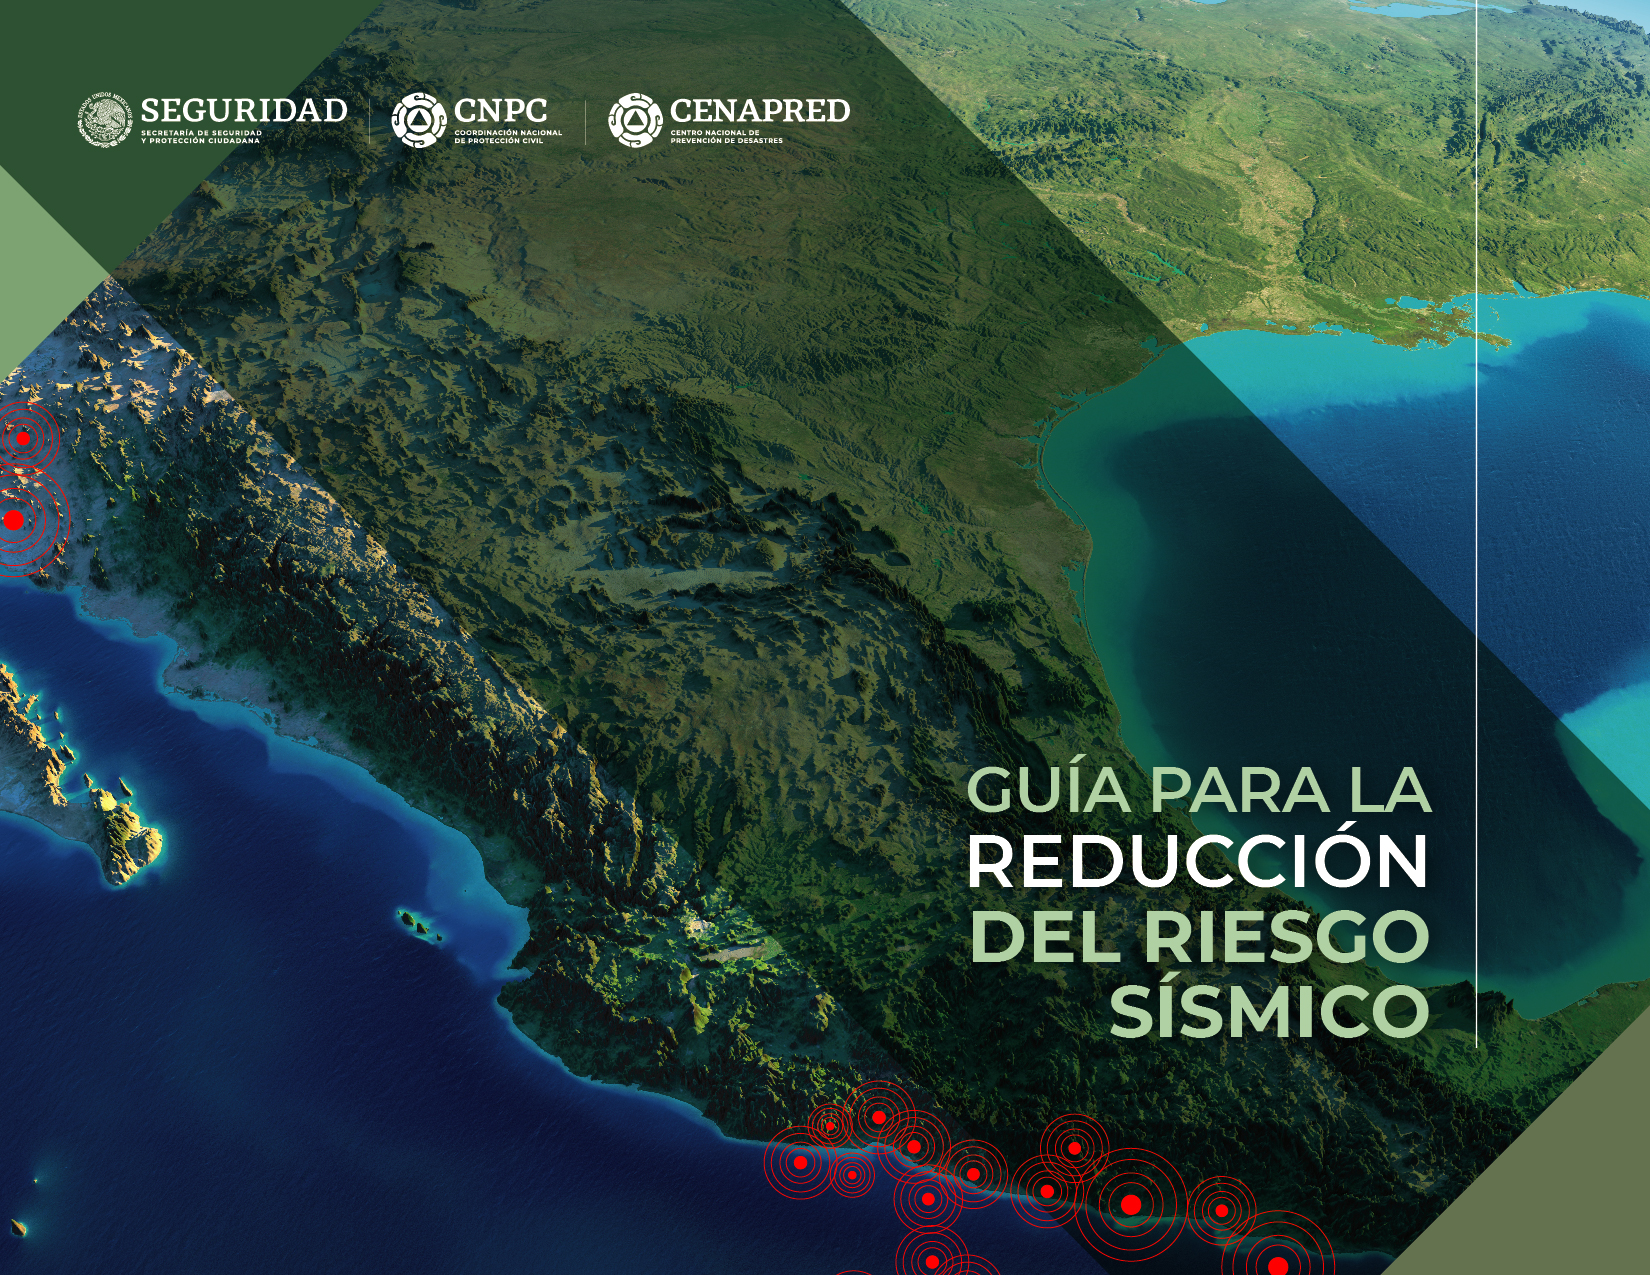 Constituye el componente preventivo y de preparación del programa “Prevensismo” del Gobierno de México